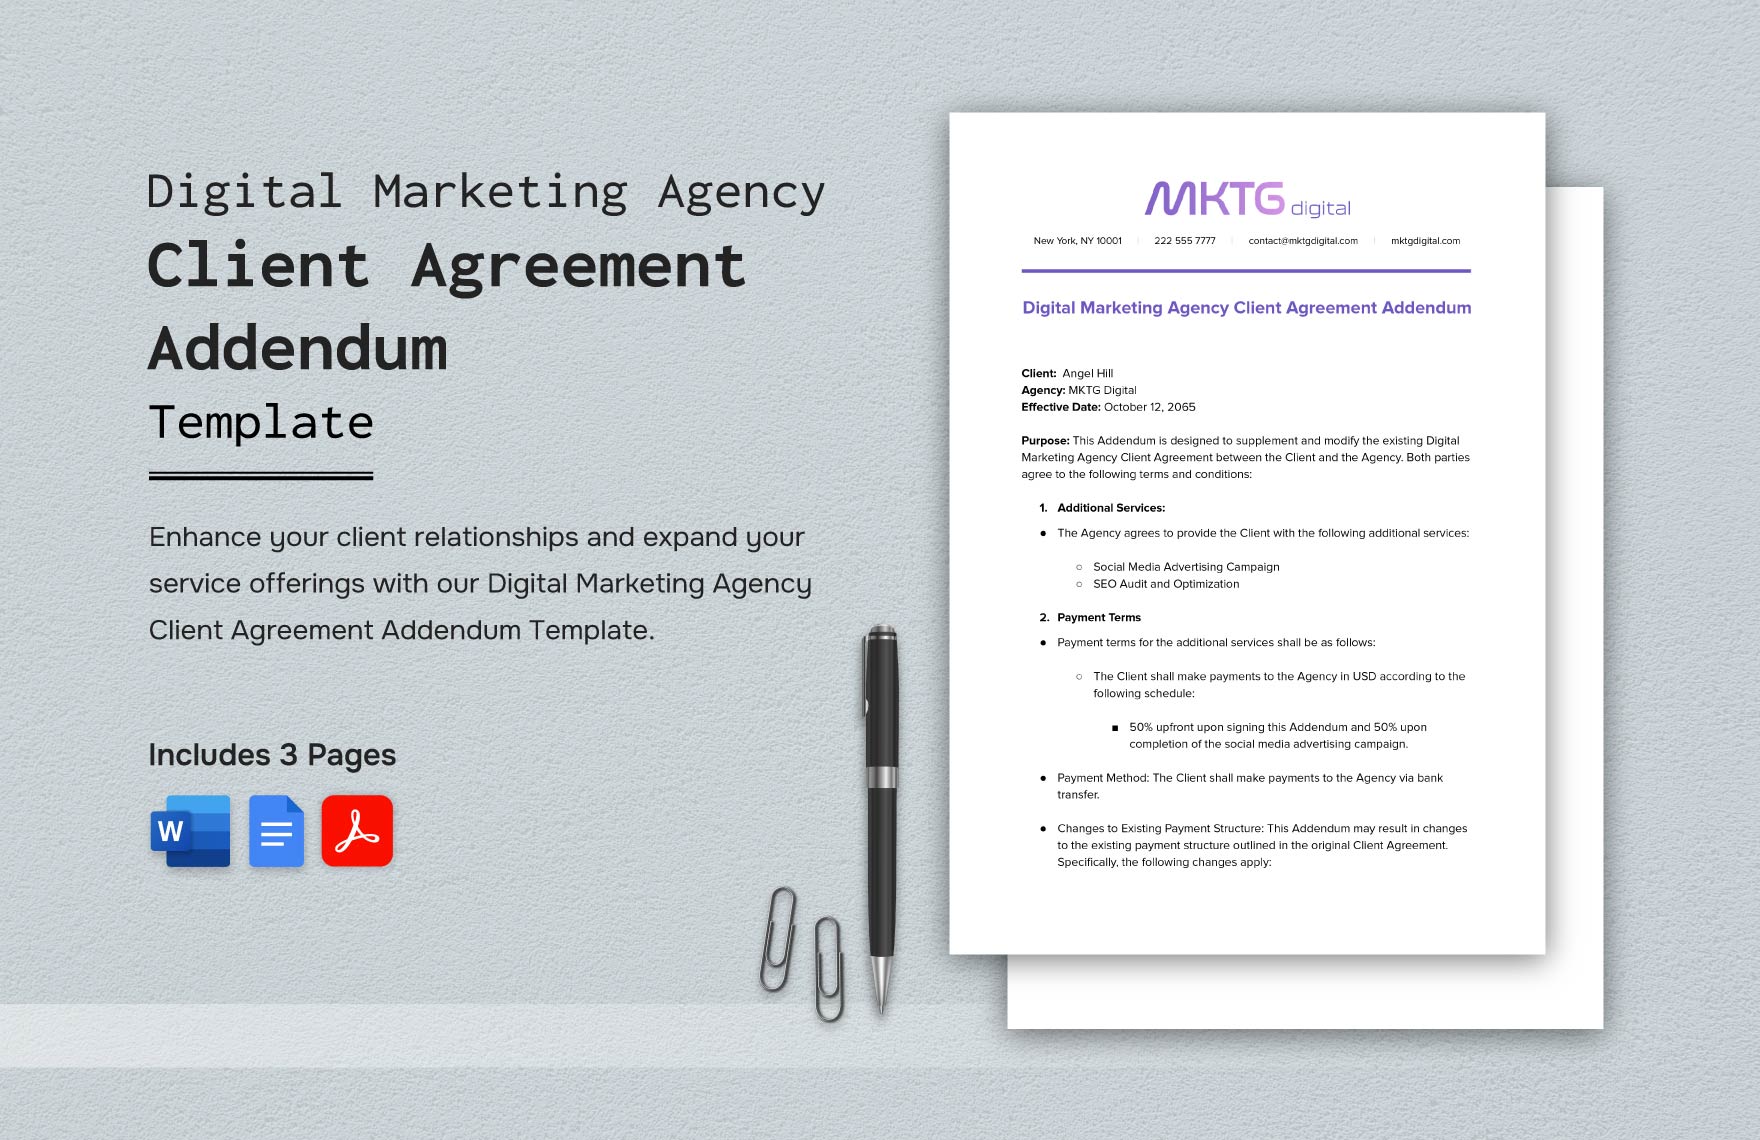 Digital Marketing Agency Client Agreement Addendum Template